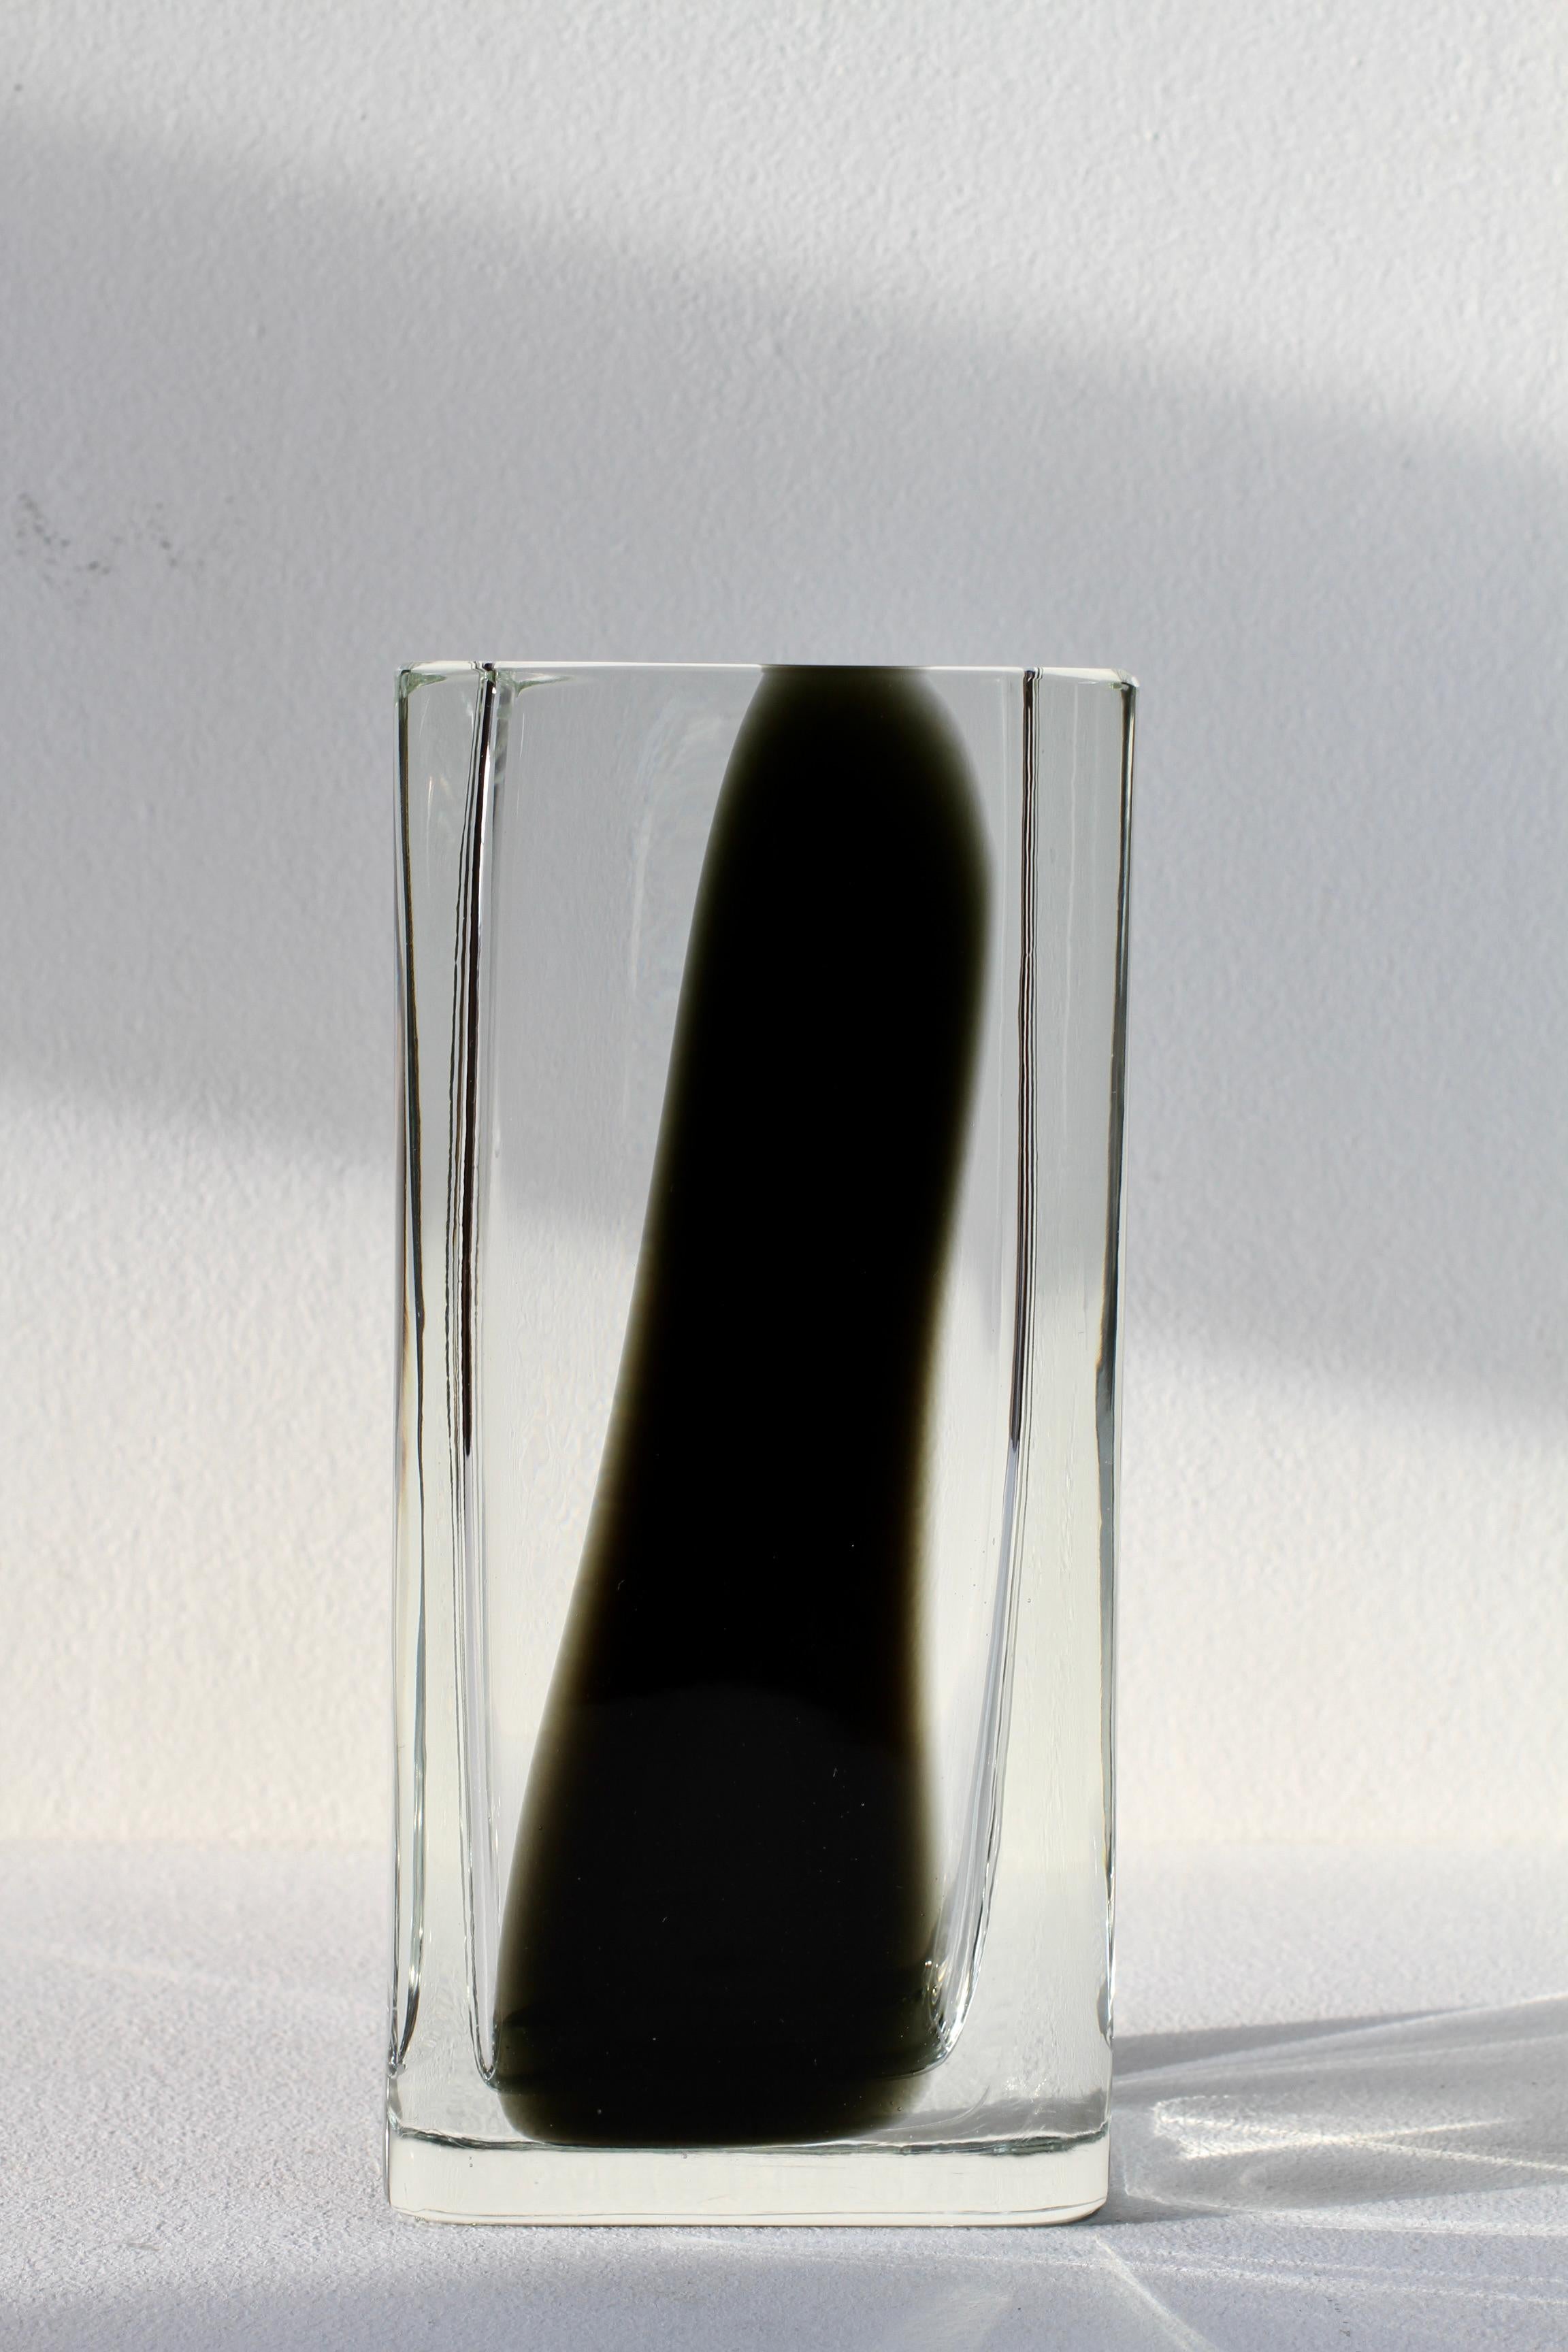 Antonio da Ros für Cenedese große, schwere und elegante Vase aus italienischem Murano-Glas, groß und quadratisch, um 1965-1975. Diese seltene, große und schwere Glasvase hat eine einfache, elegante Form und ein Design aus dickem, klarem Glas mit